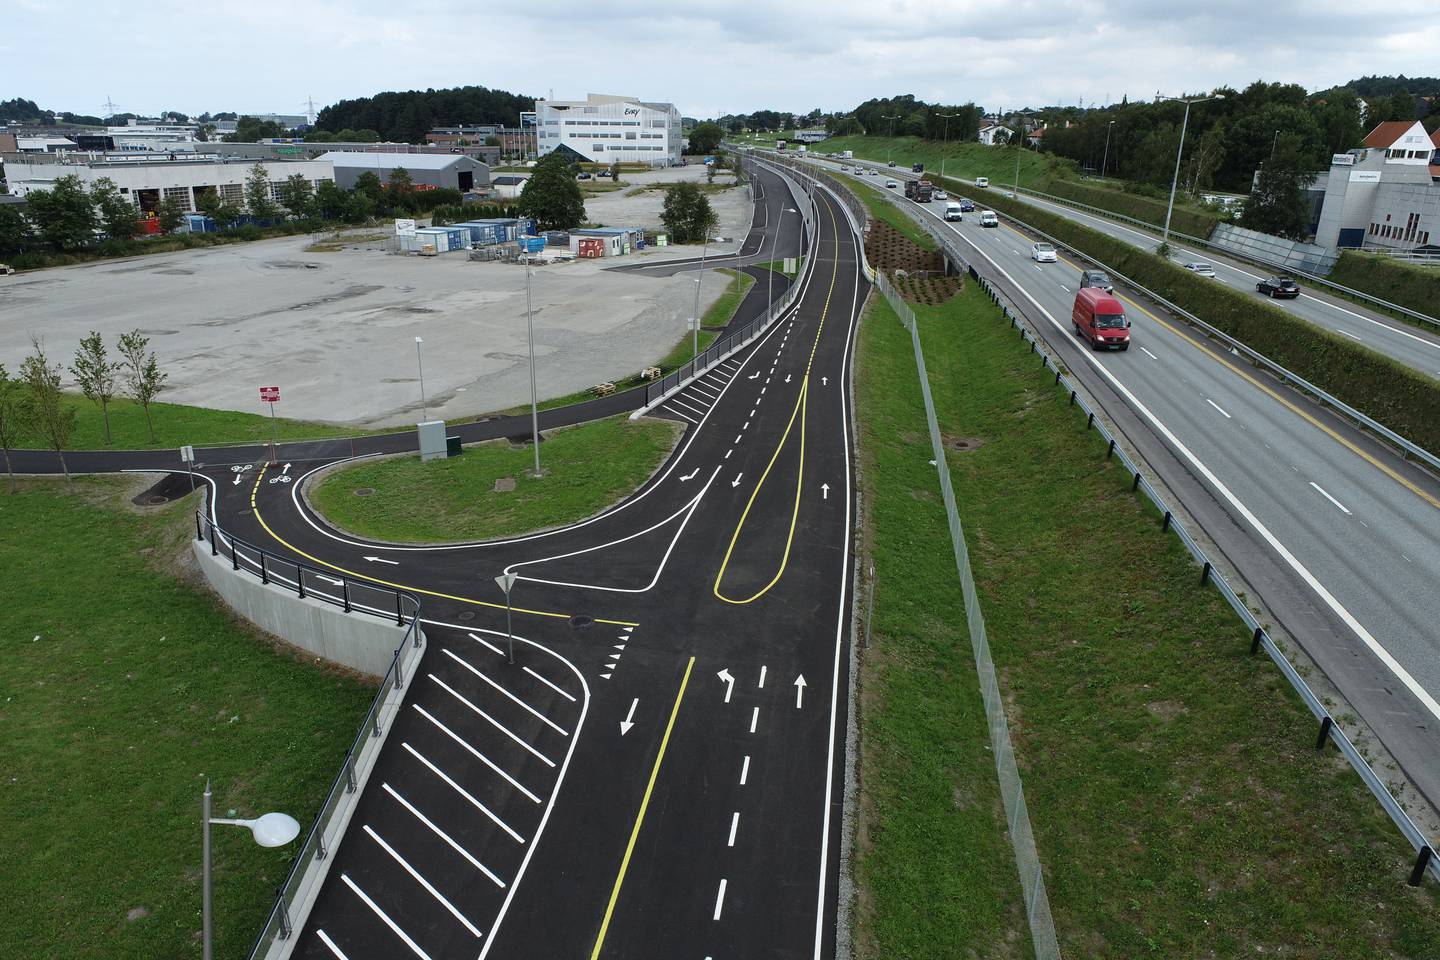 Fem-seks meter brede ekspressykkelveier med gul midtstripe trenger vi ikke, ifølge Frp. Den nye sykkelstamveien mellom Stavanger og Sandnes er et eksempel på en slik vei. Første del ble offisielt åpnet i fjor høst, og alle de 13 kilometerne skal stå ferdige i løpet av 2024.